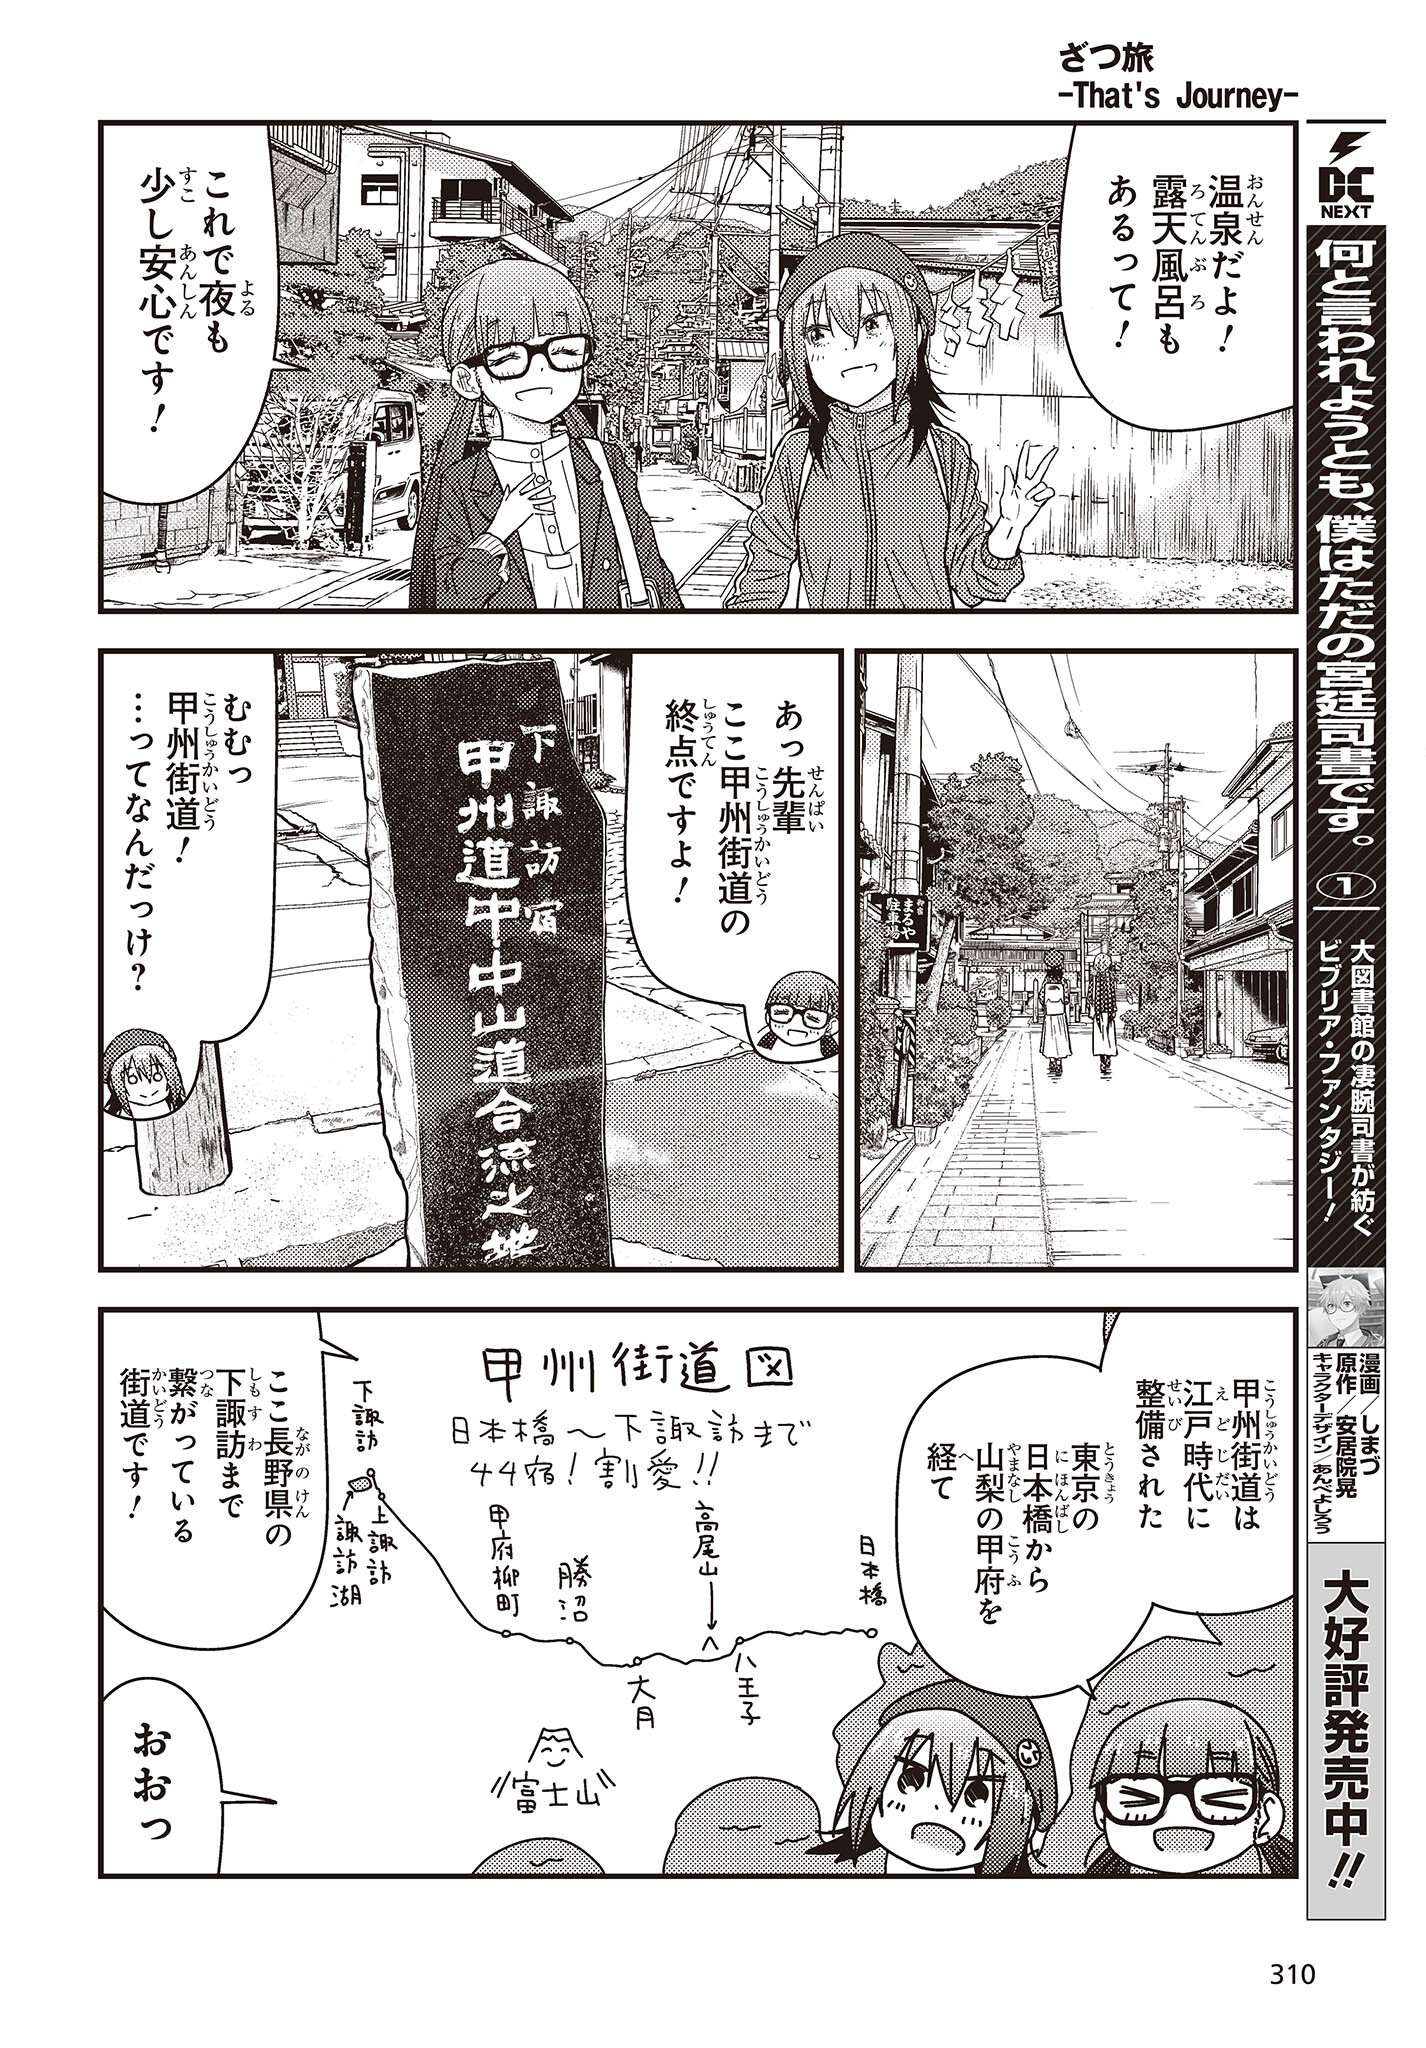 ざつ旅-That's Journey- 第28話 - Page 14